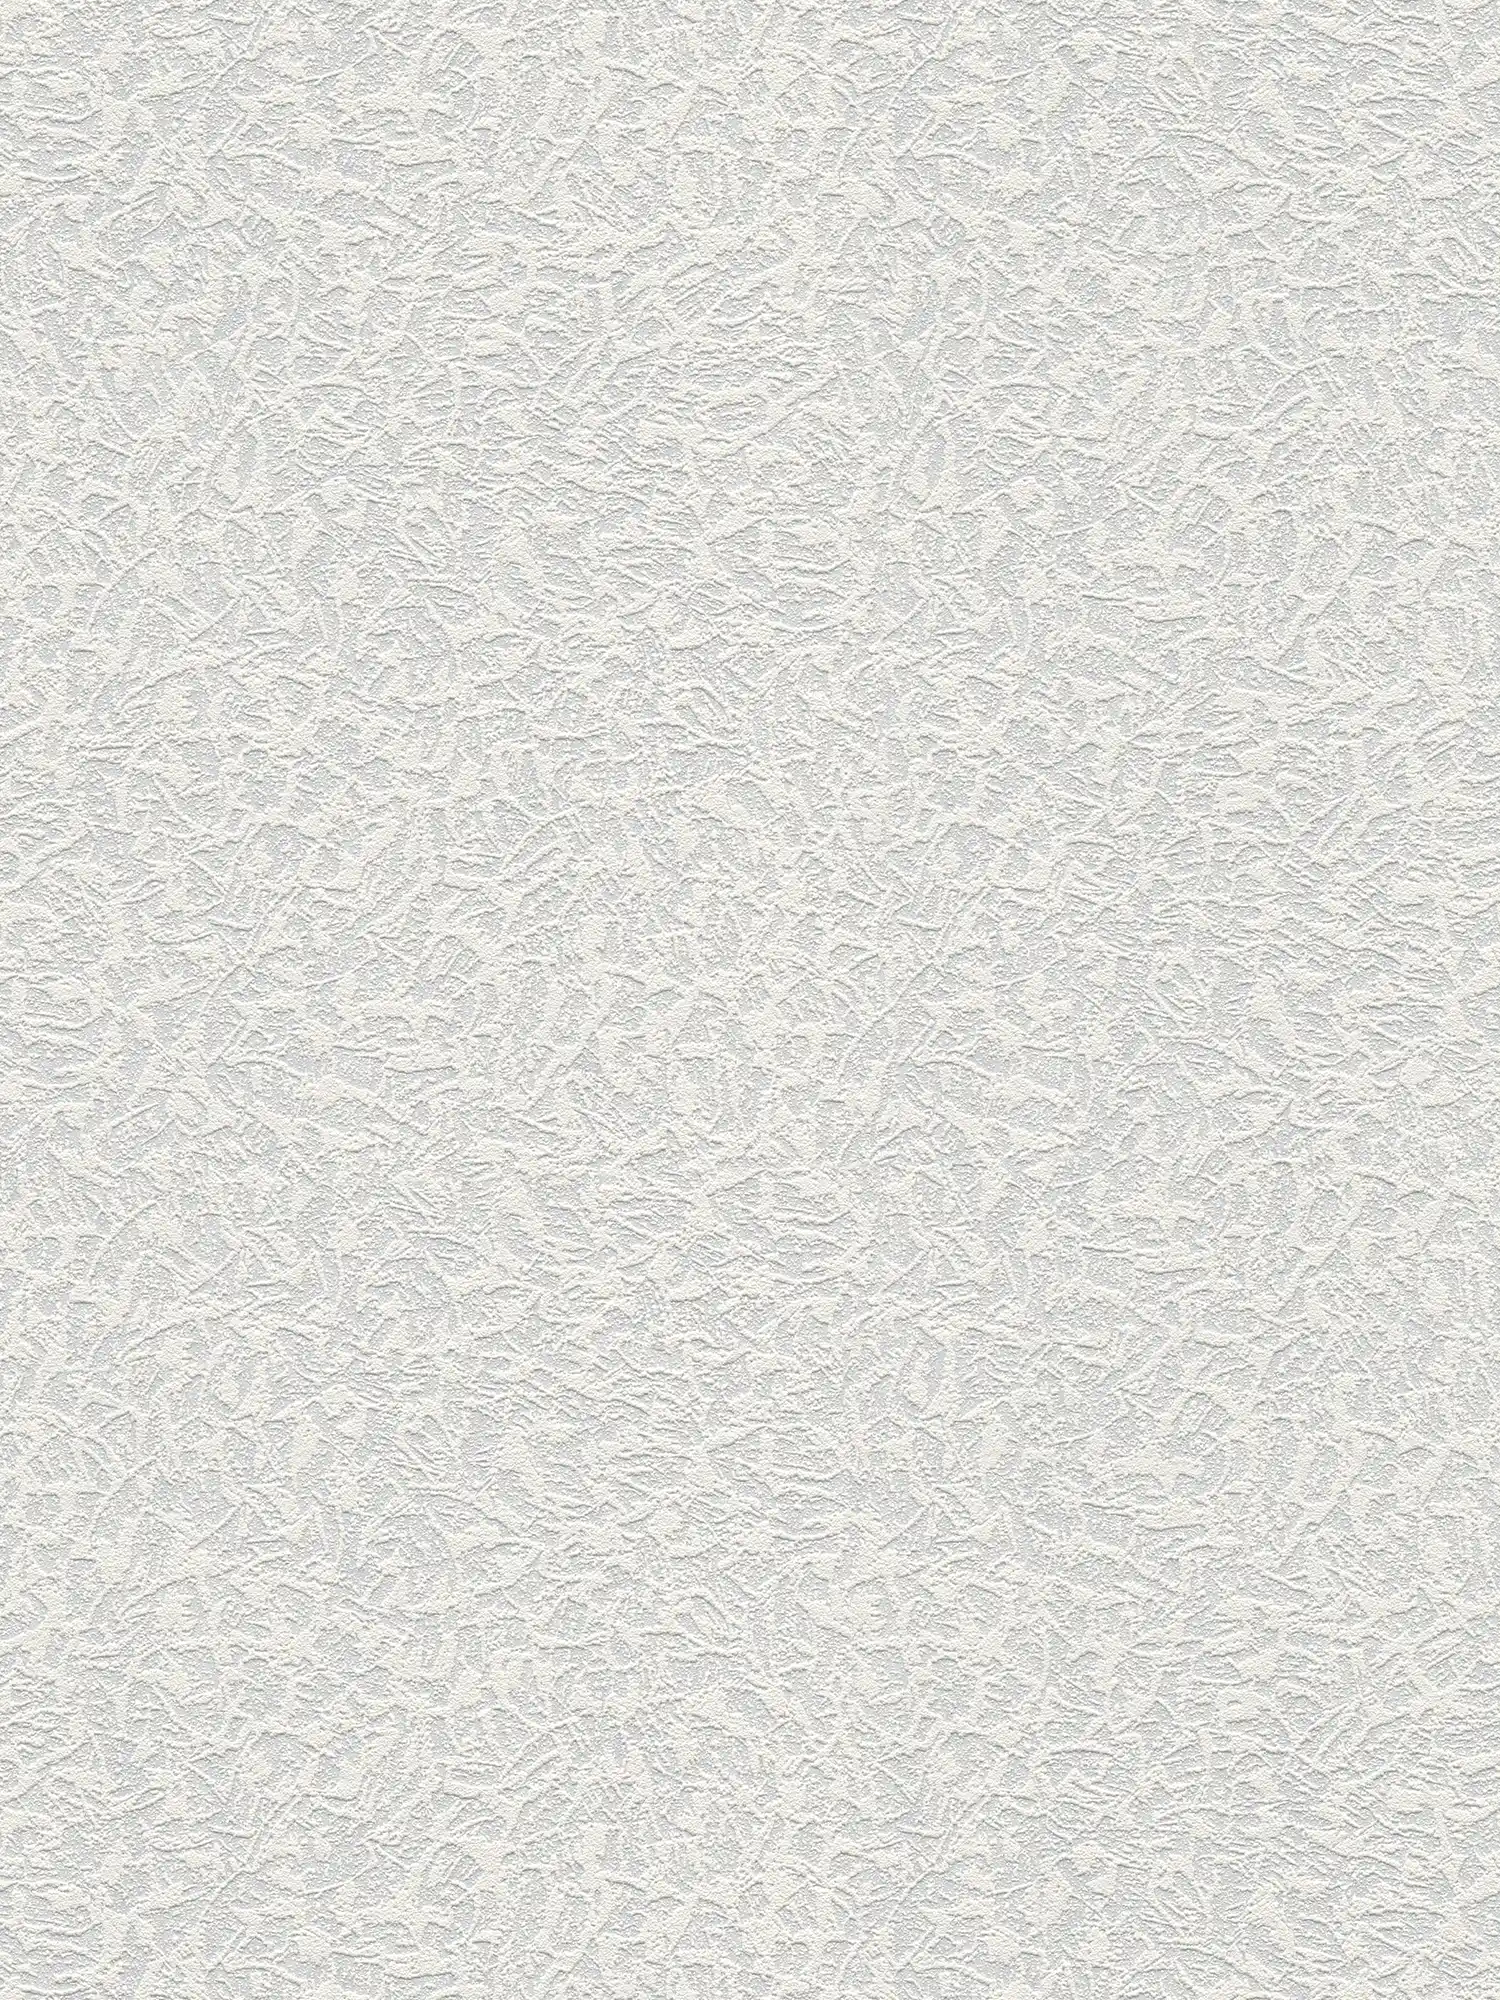 Overschilderbaar behangpapier met gipsmotief - wit
